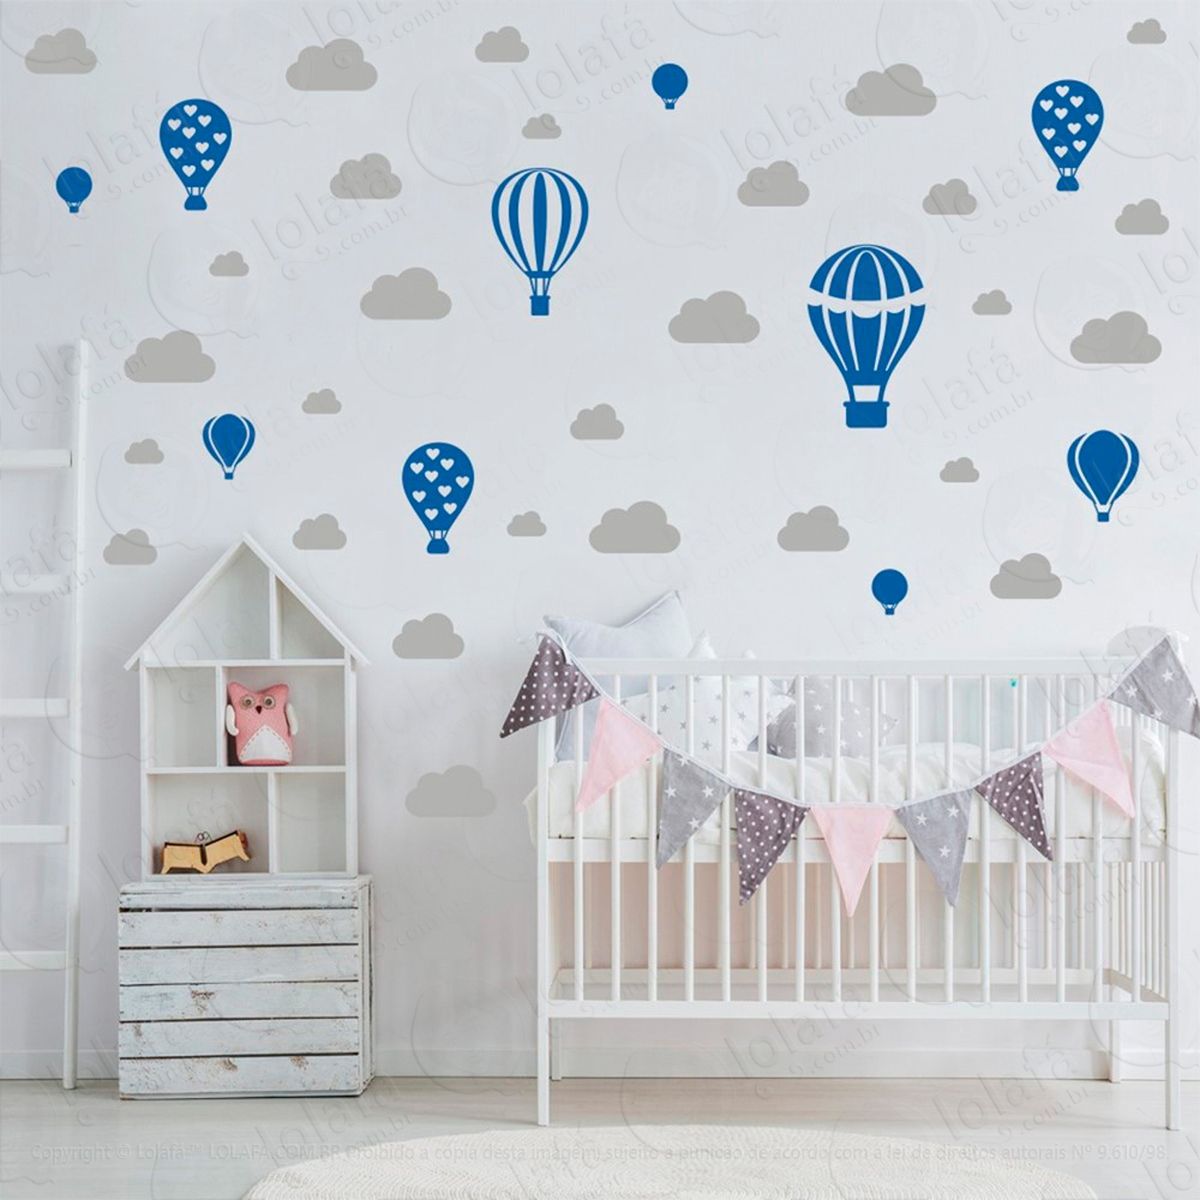 adesivos balões e nuvens 42 peças adesivos para quarto de bebê infantil - mod:793